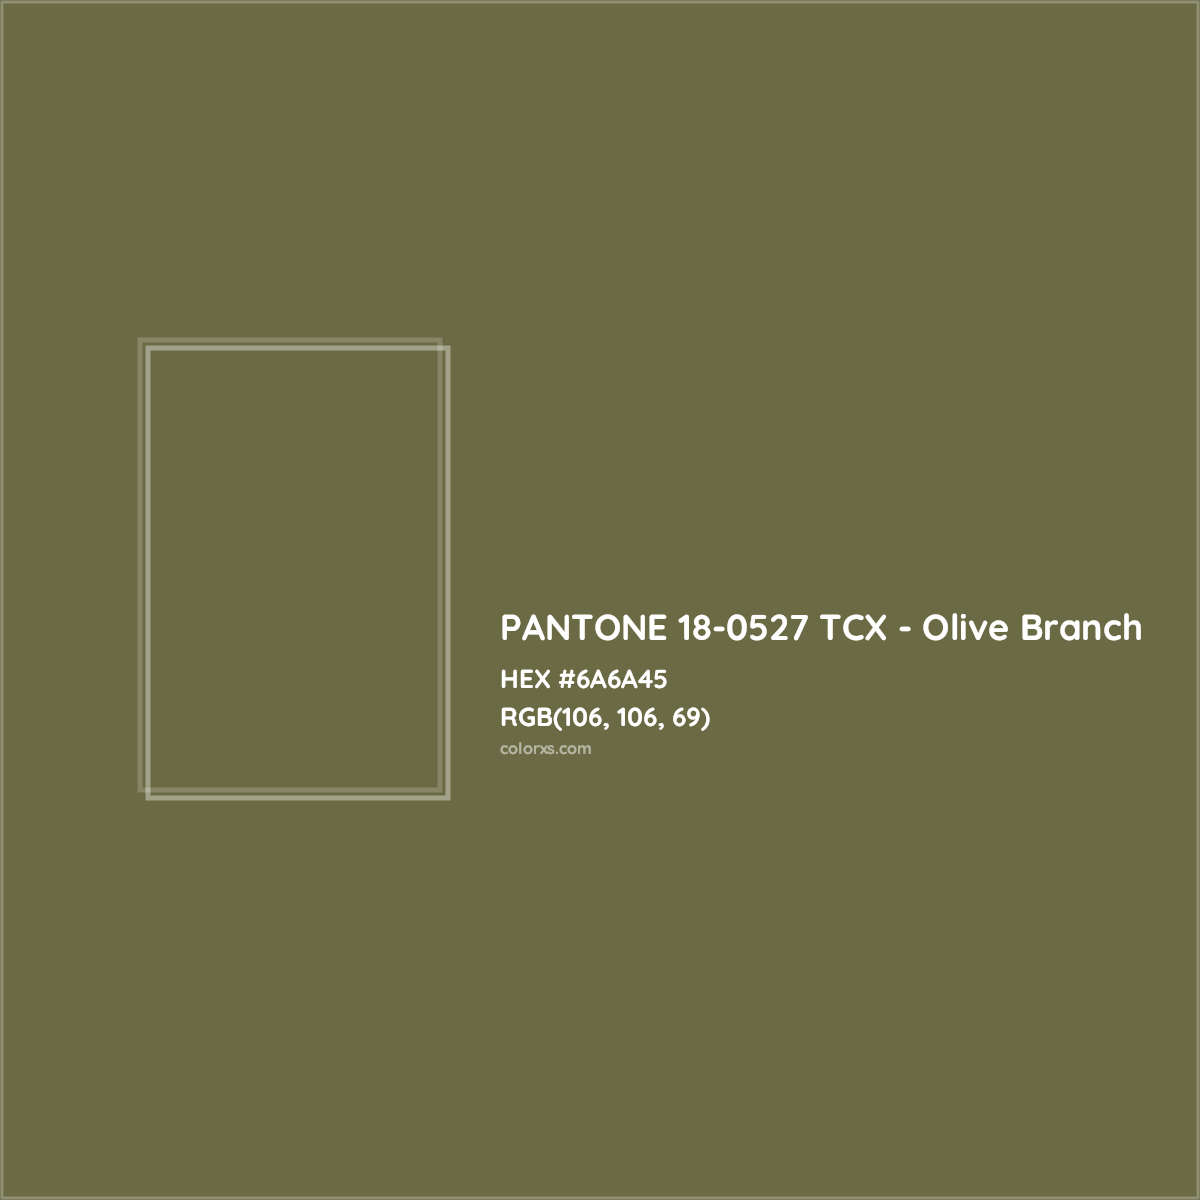 HEX #6A6A45 PANTONE 18-0527 TCX - Olive Branch CMS Pantone TCX - Color Code